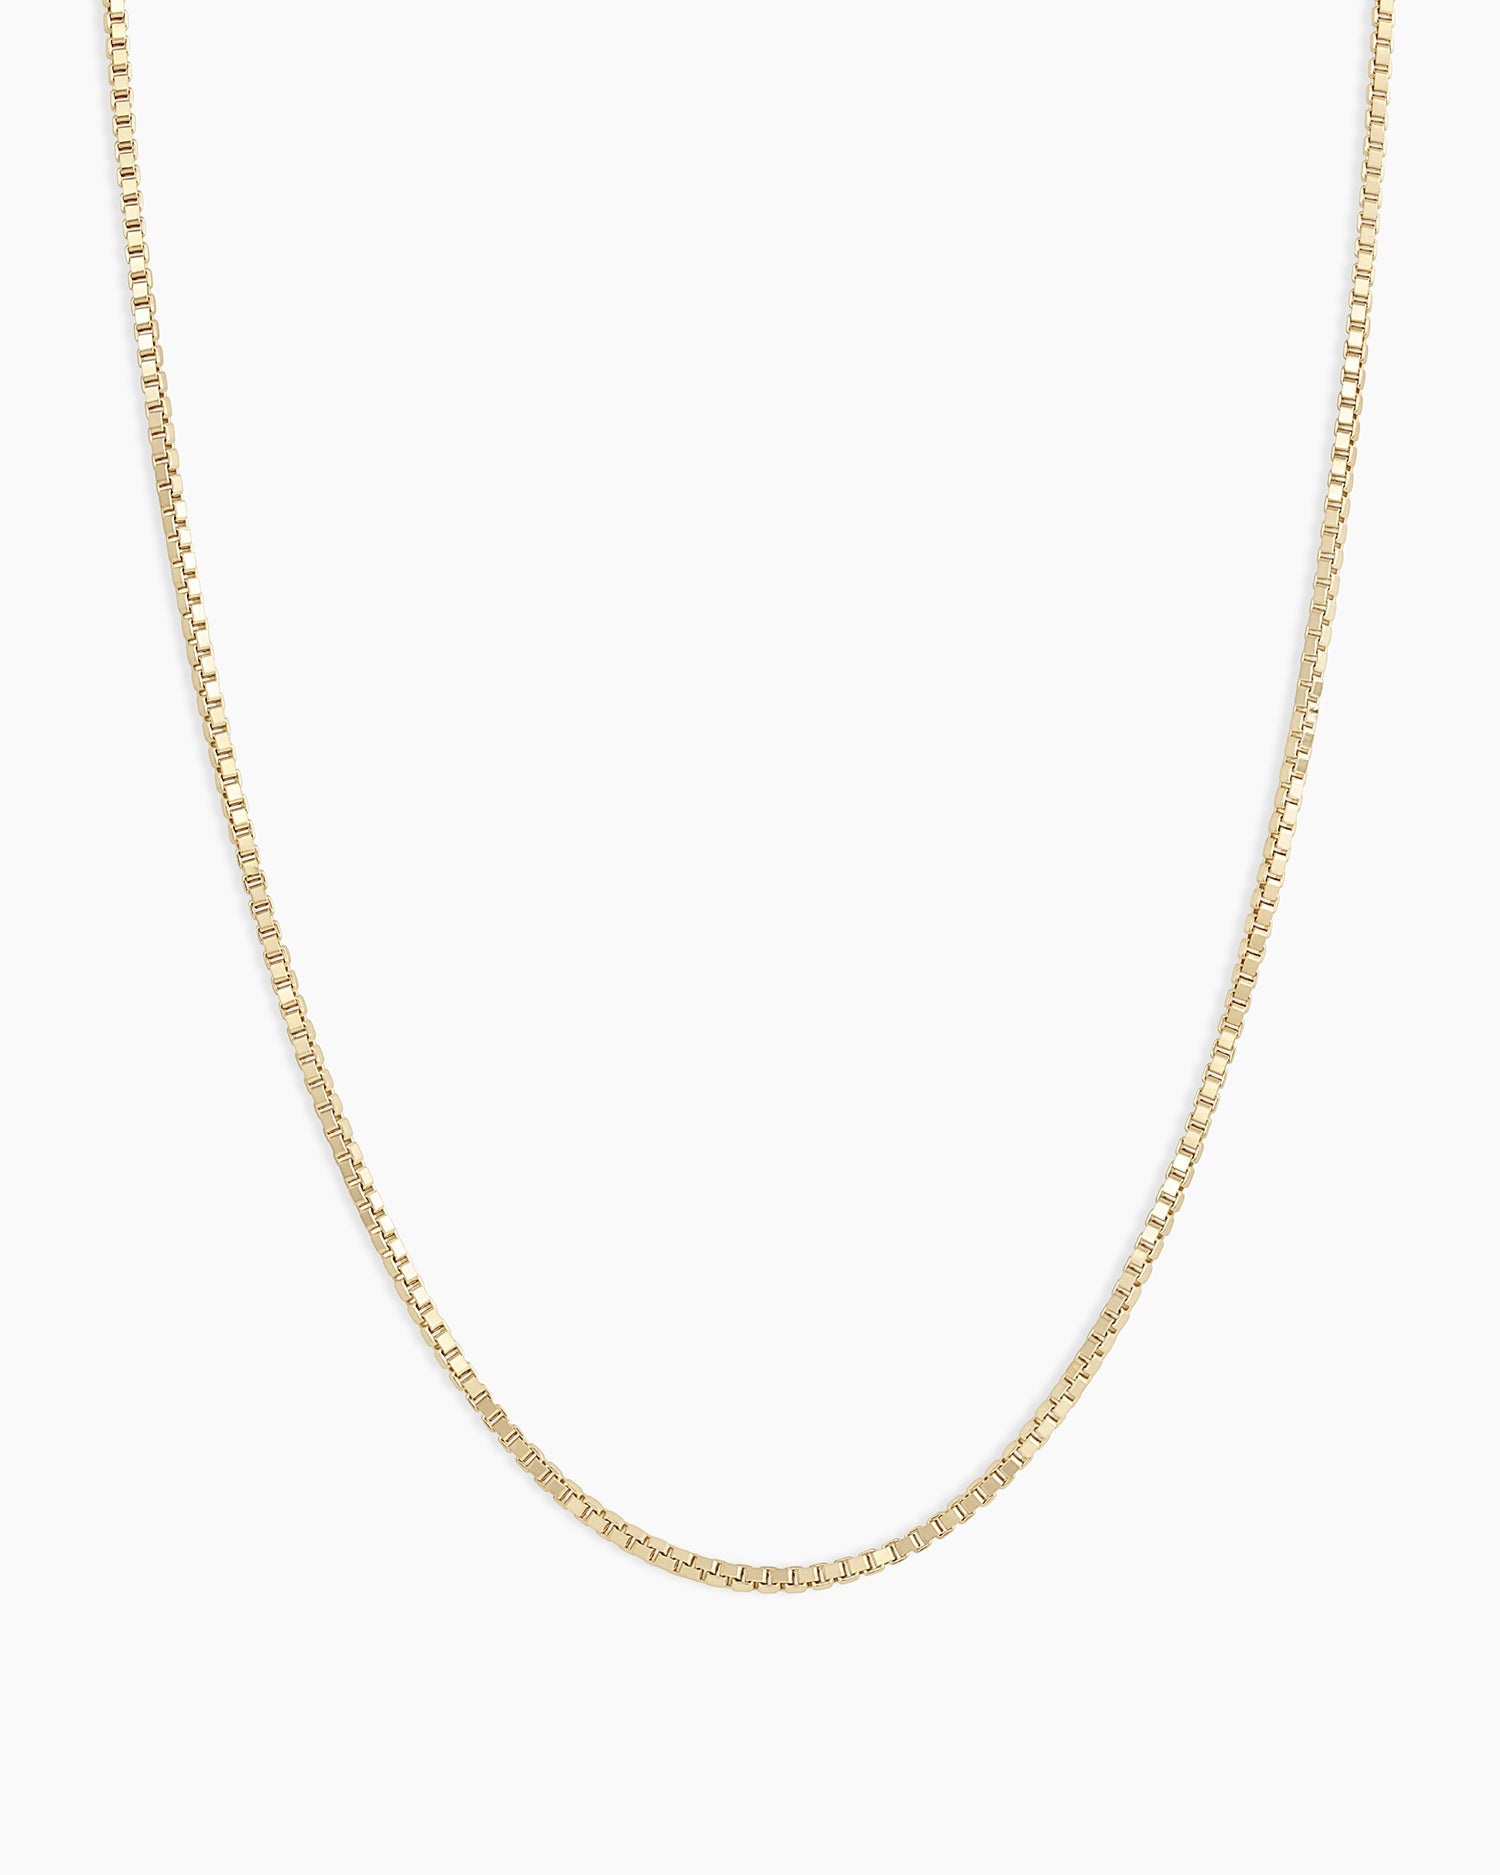 Men&Women's 18K White Gold Filled 24 inch 2mm wide Round Box Chain Necklace  R5KW | eBay